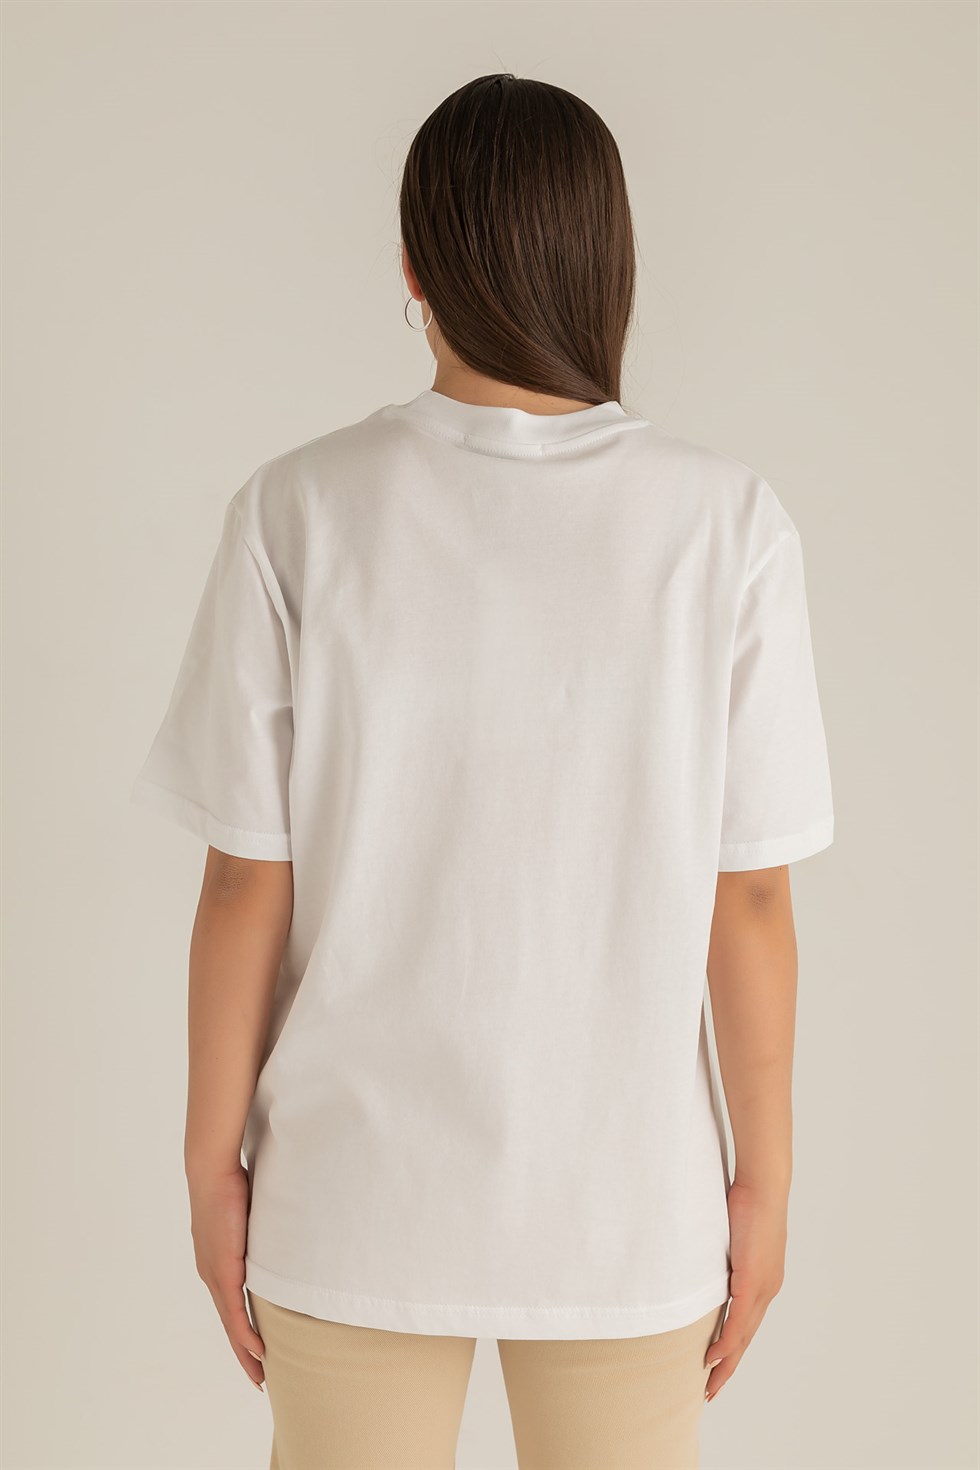 Deniz Butik Ayıcık Baskılı T-Shirt - BEYAZ. 5